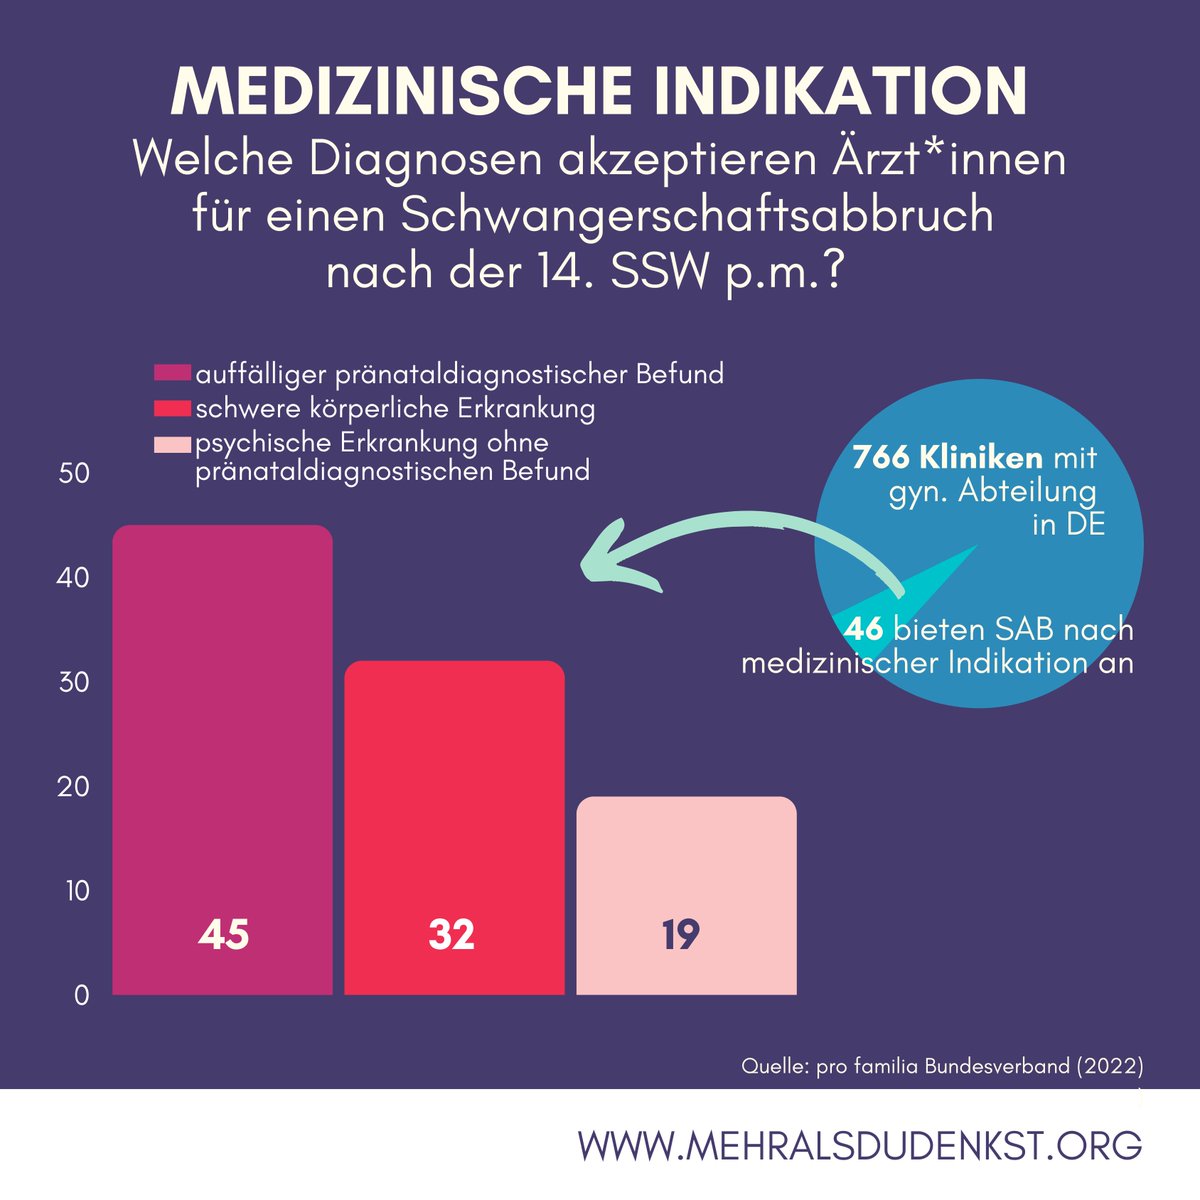 Ein #Schwangerschaftsabbruch ist in #Deutschland nach der Beratungsregelung, der kriminiologischen sowie der medizinischen Indikation möglich. Heute wollen wir uns die Letzte der 3 anschauen.